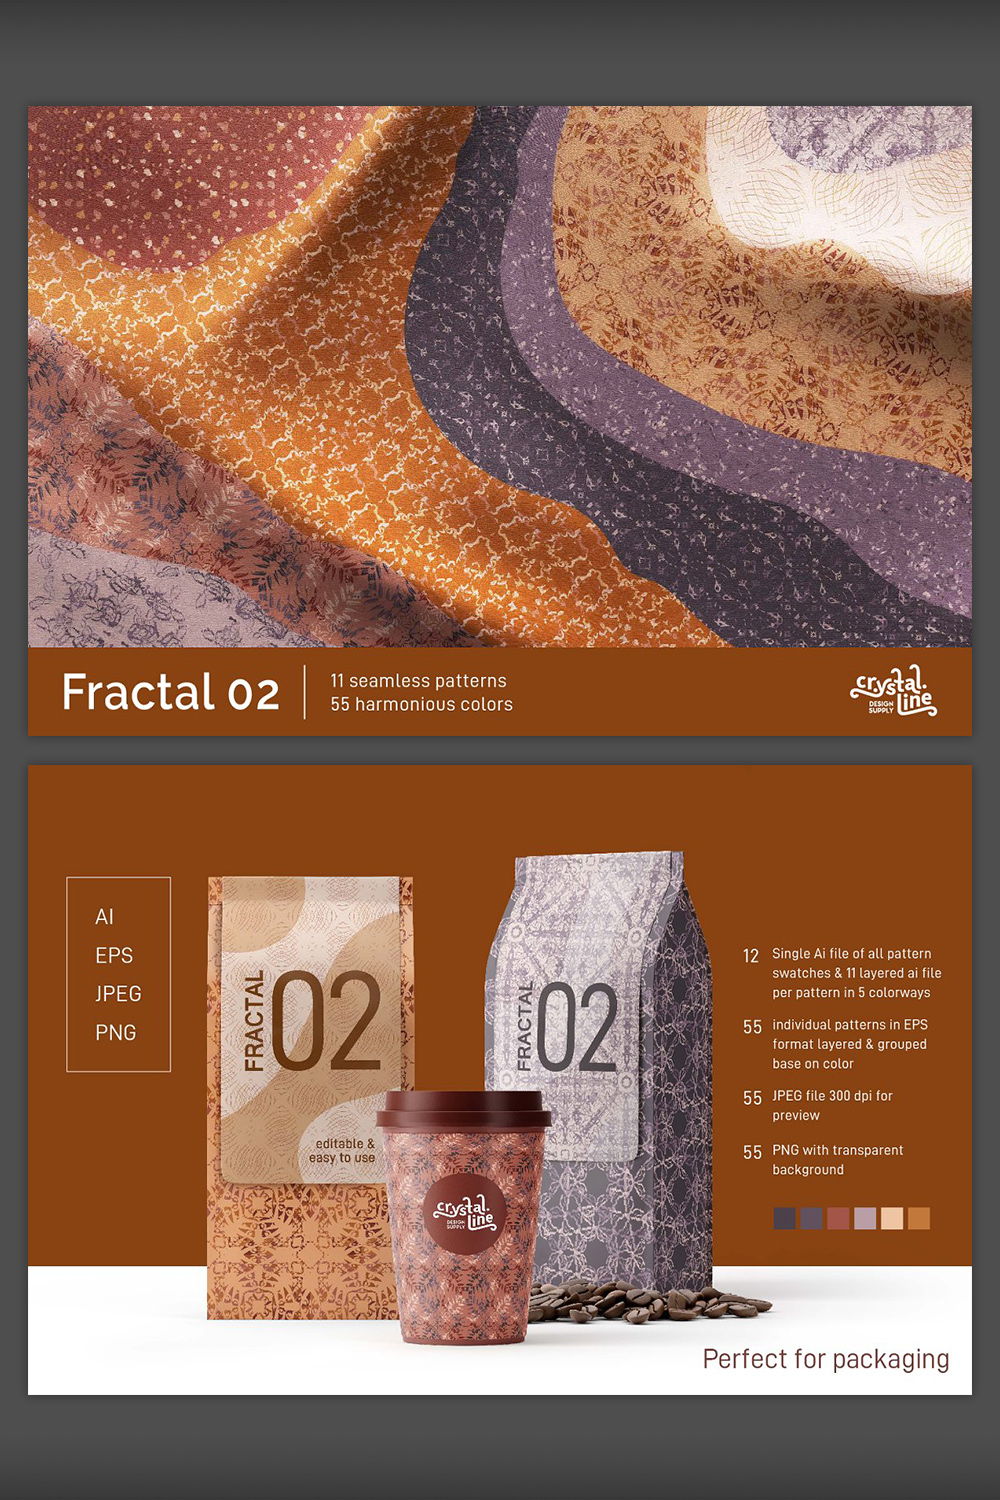 Fractal Patterns 02 pinterest image.